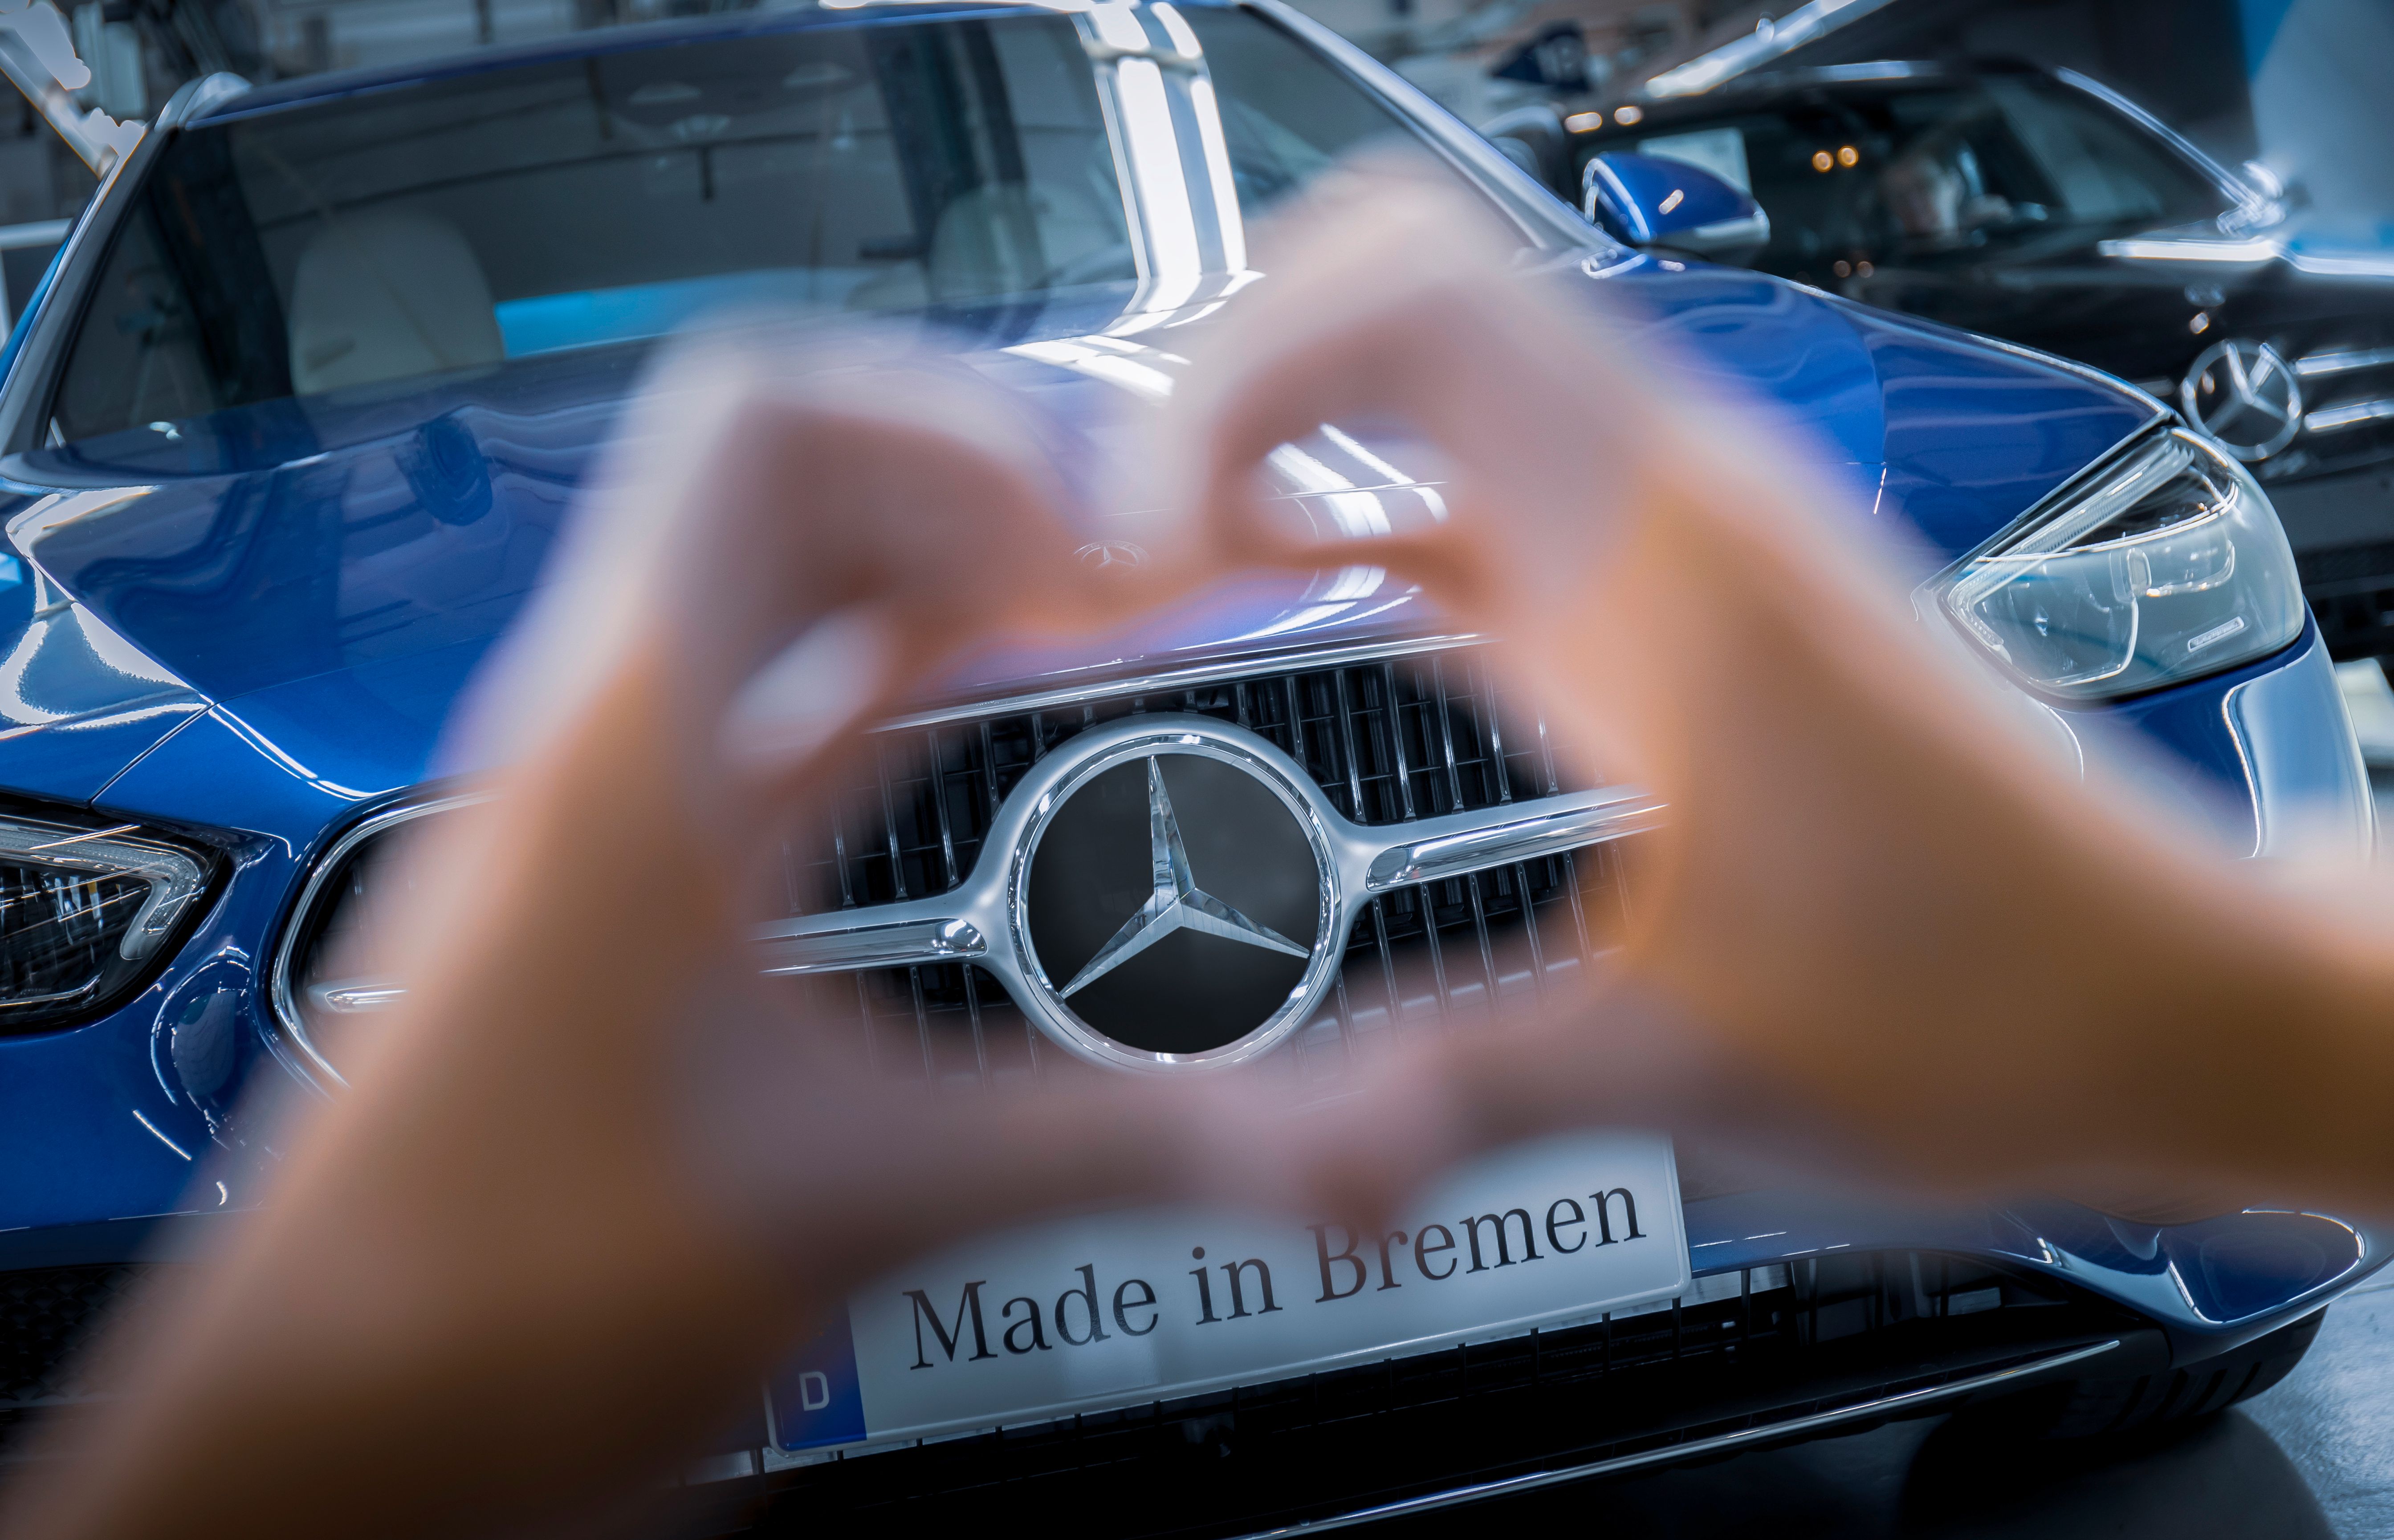 The Mercedes-Benz logo on a car.